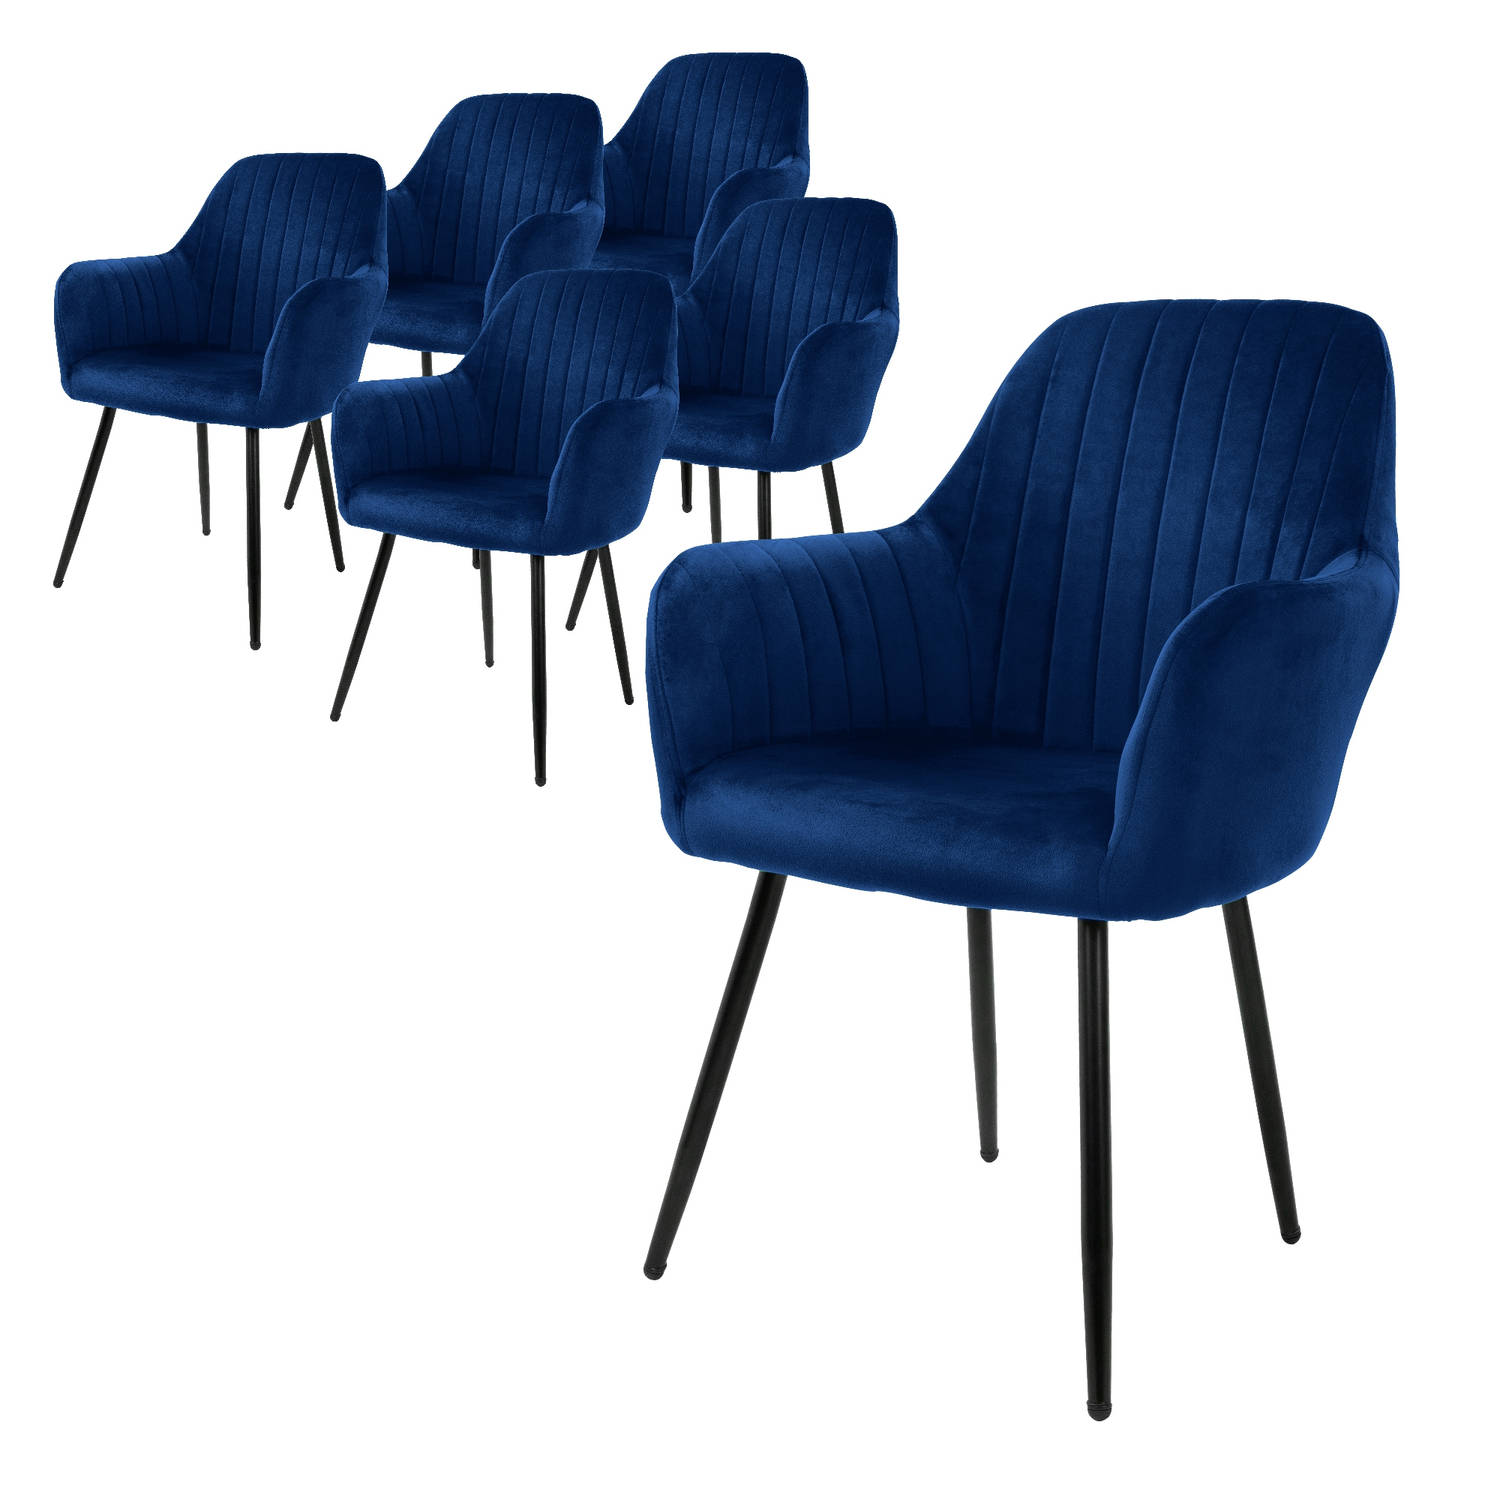 ML-Design set van 6 eetkamerstoelen met rugleuning en armleuningen, blauw, keukenstoelen met fluwelen bekleding, gestoffeerde stoelen met metalen poten, ergonomische stoelen voor e